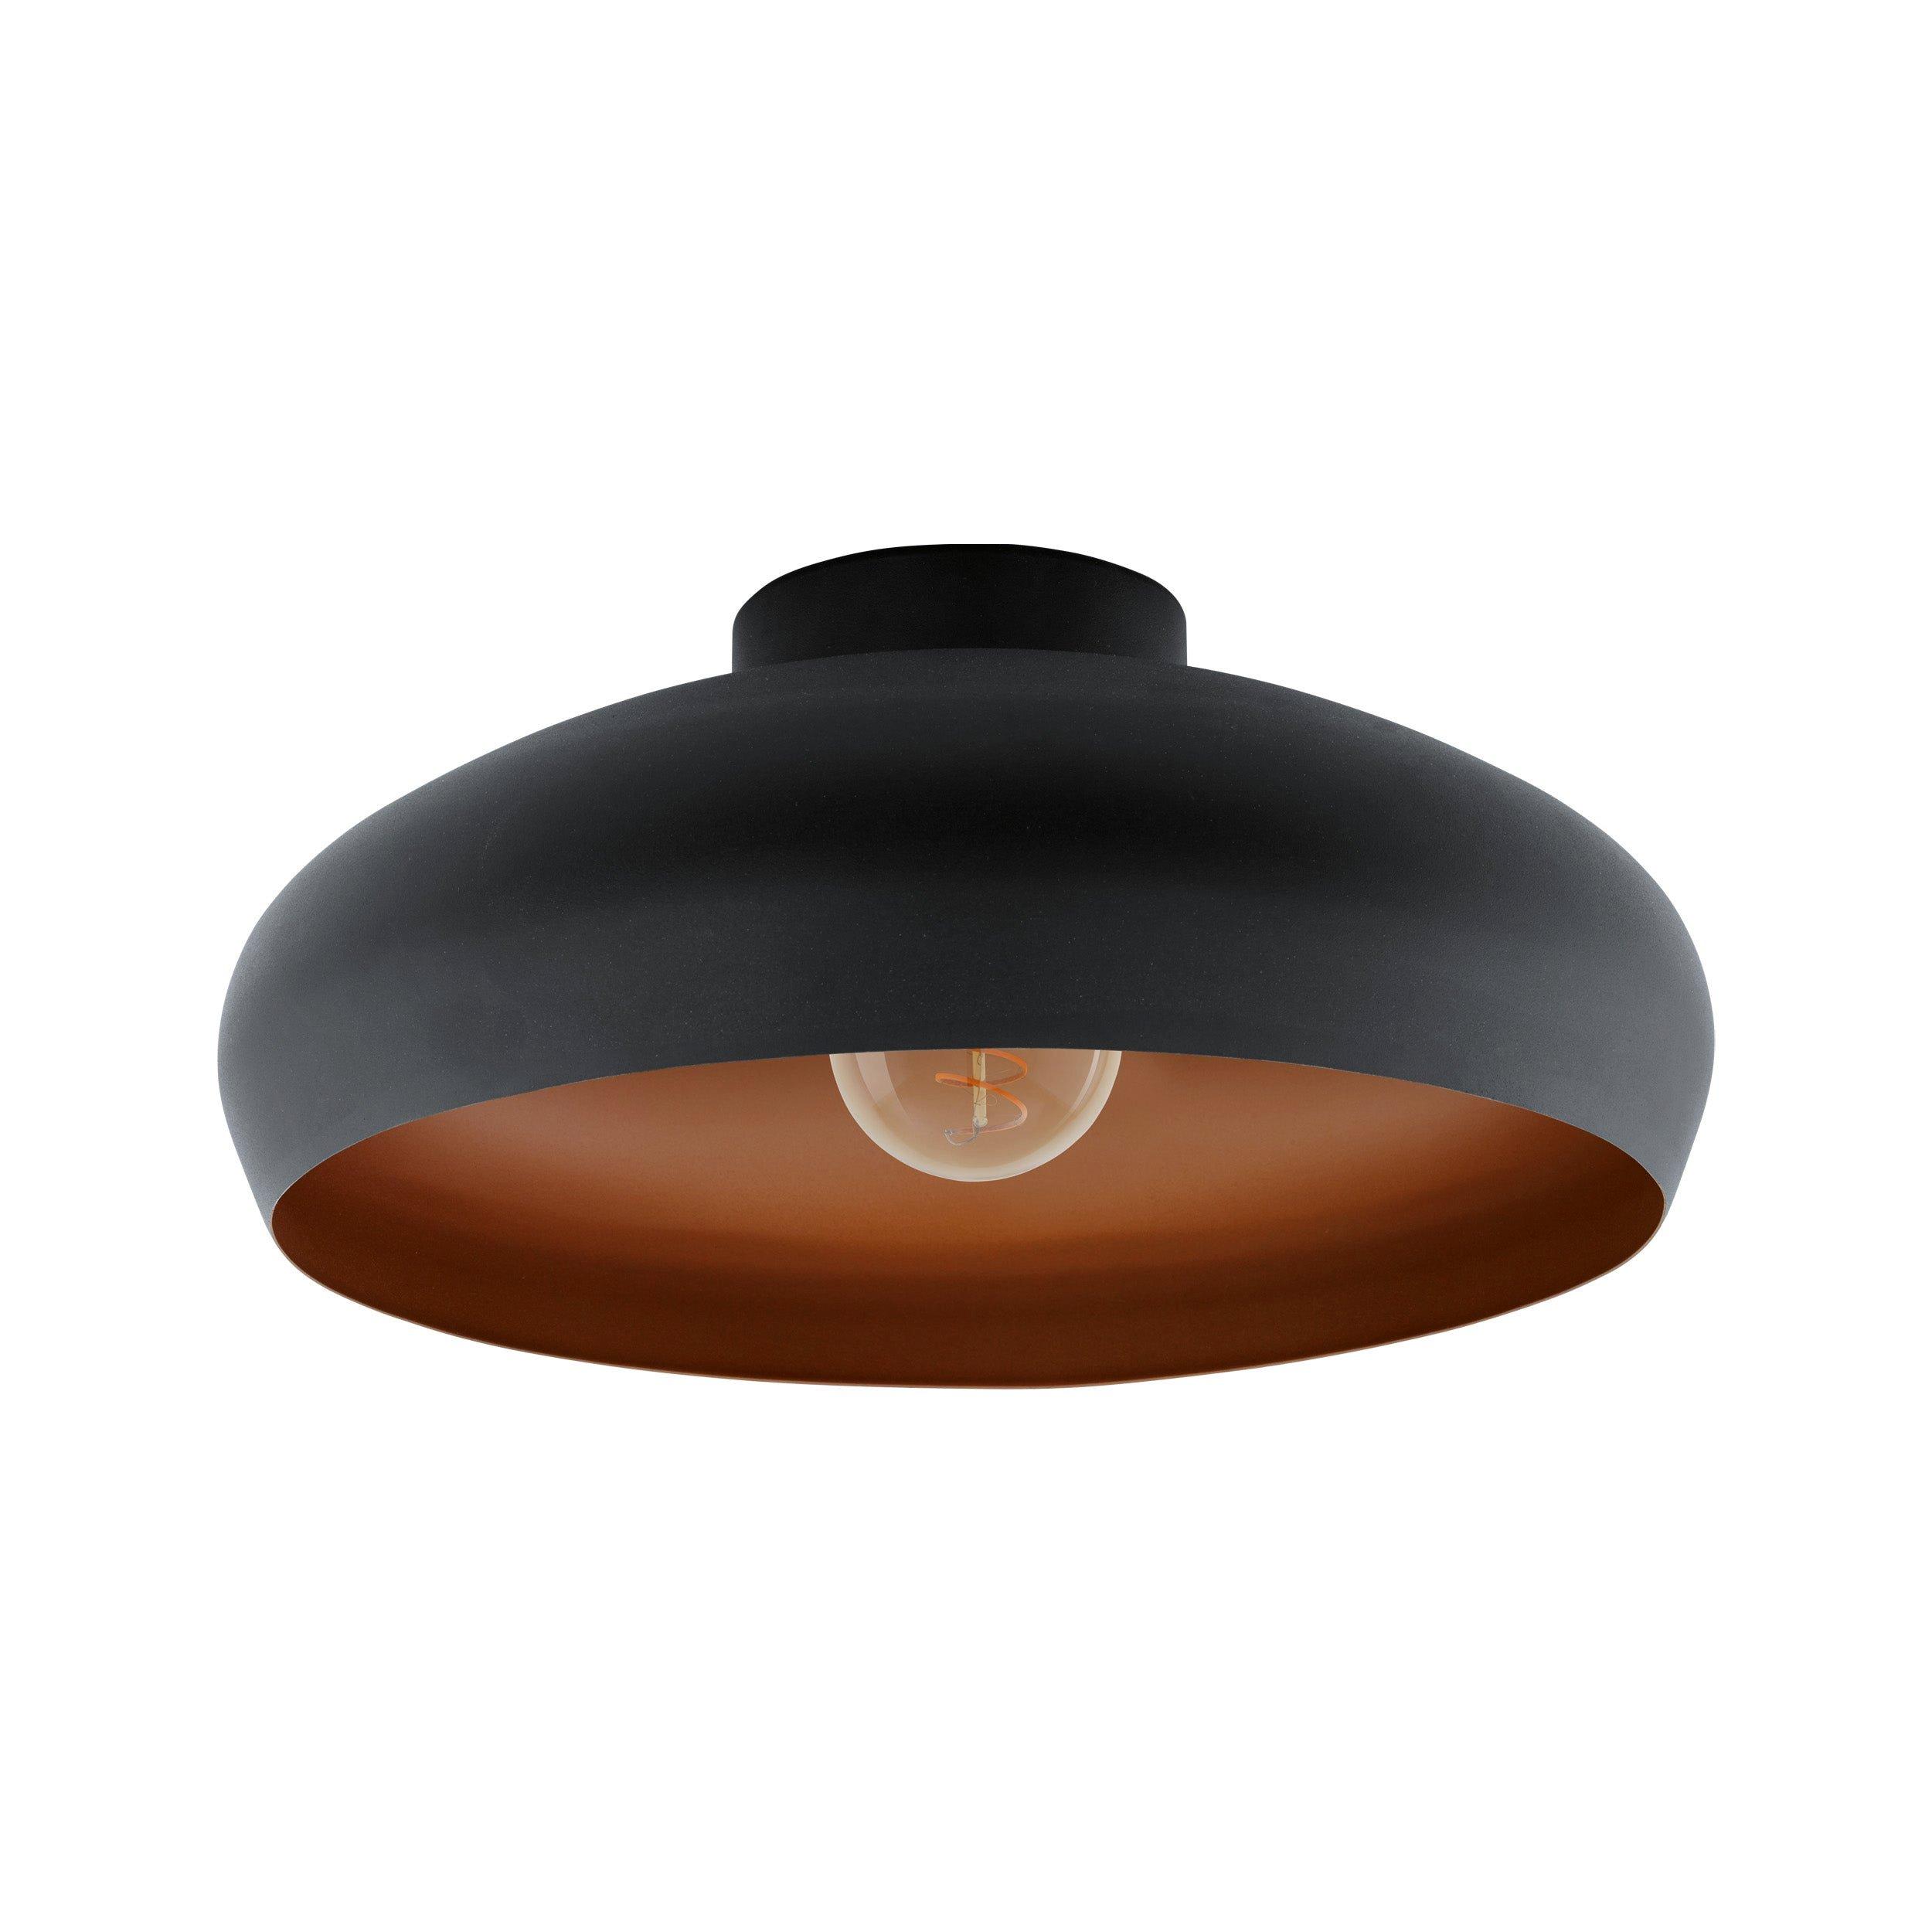 Semi Flush Ceiling Light Black & Copper Round Shade 1 x 60W E27 Bulb Feature